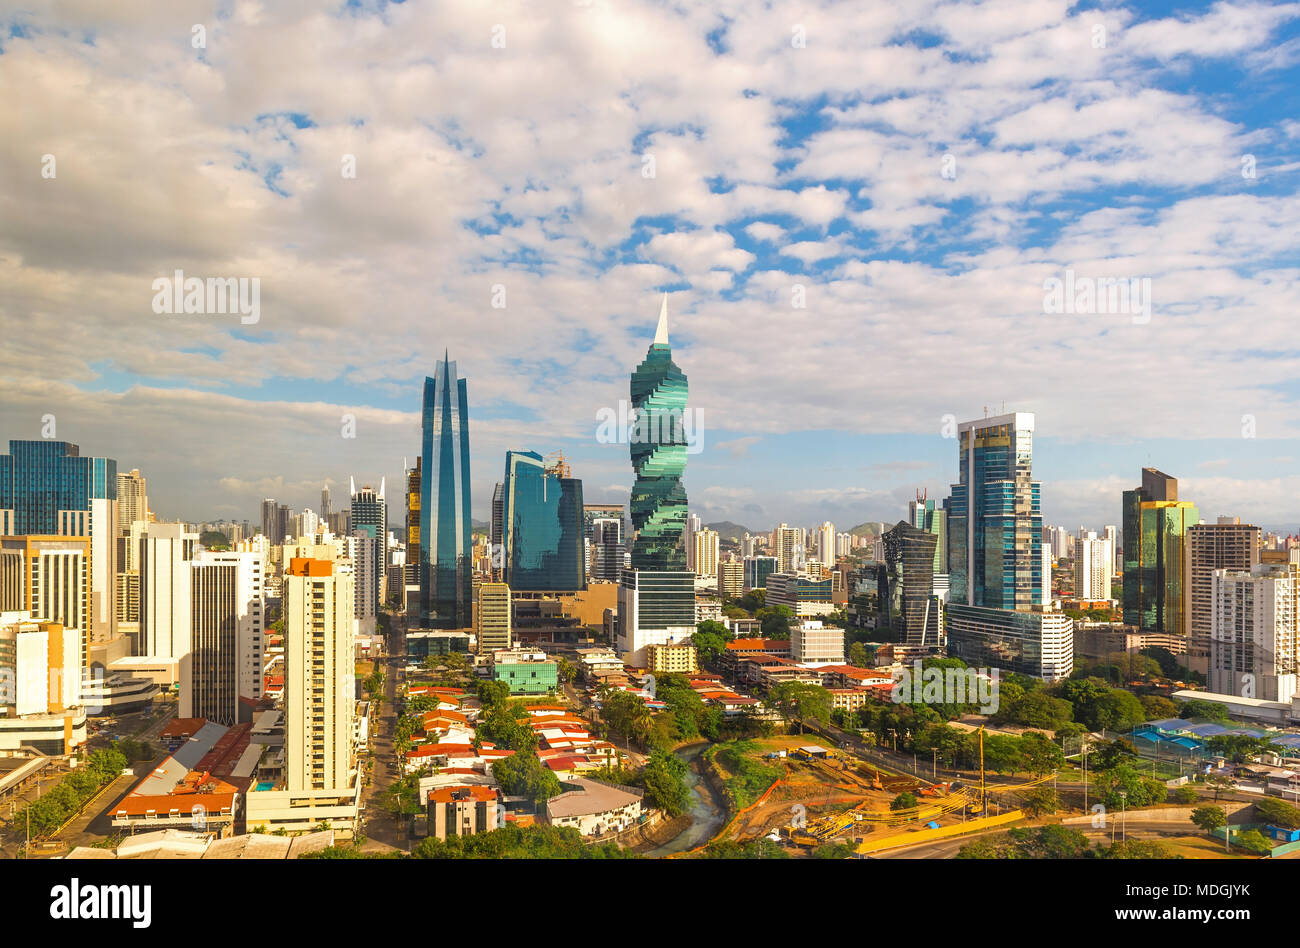 Lo skyline della città di Panama a alba con i suoi grattacieli e architettura moderna, Panama America centrale. Foto Stock